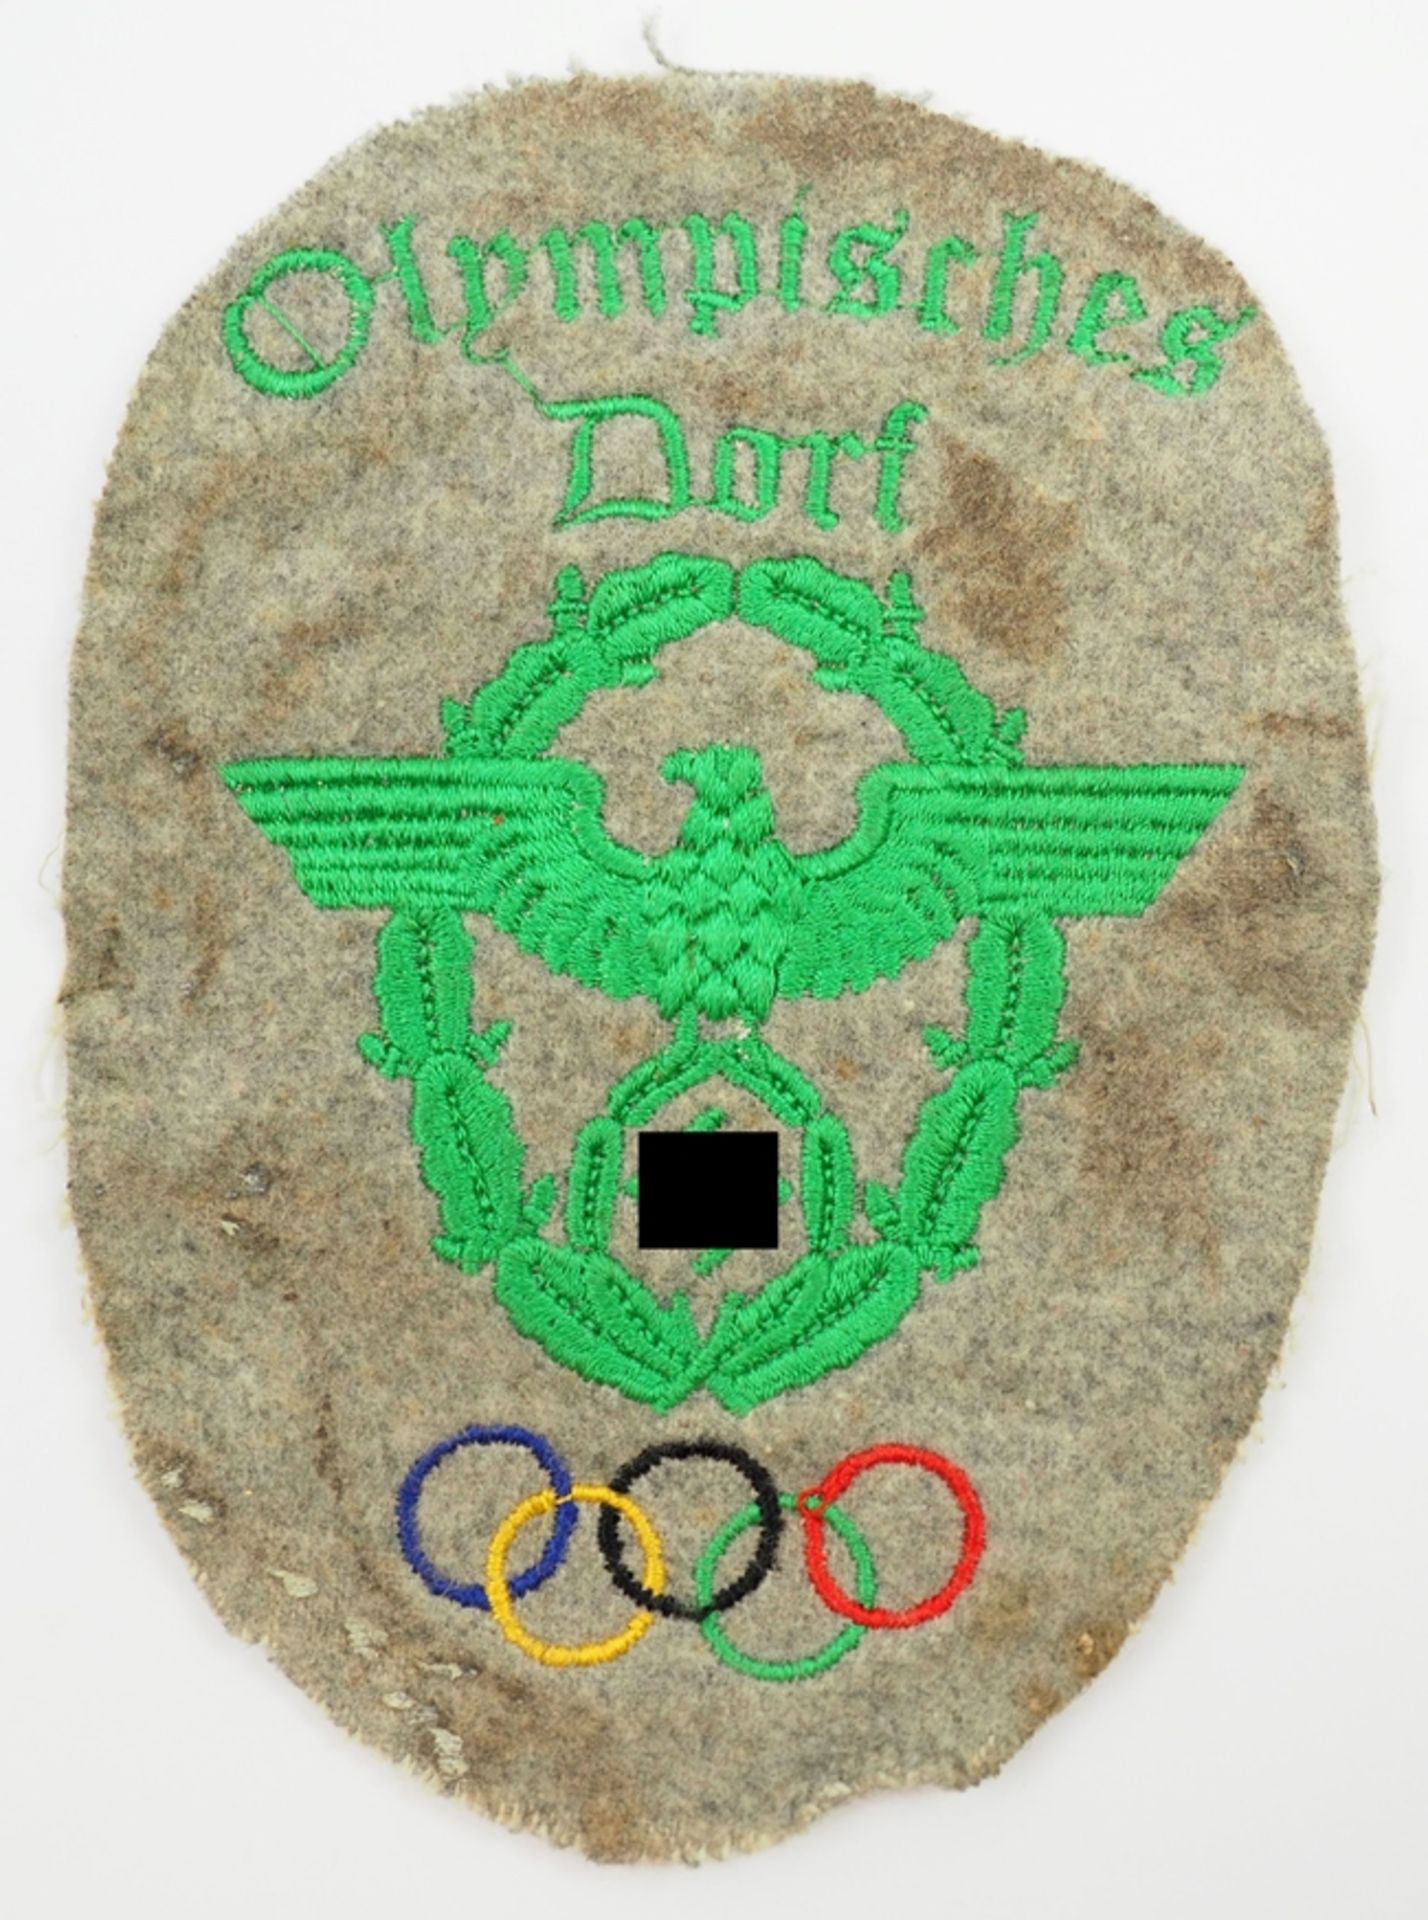 Olympiade 1936: Ärmelabzeichen der Polizei des Olympischen Dorfes.